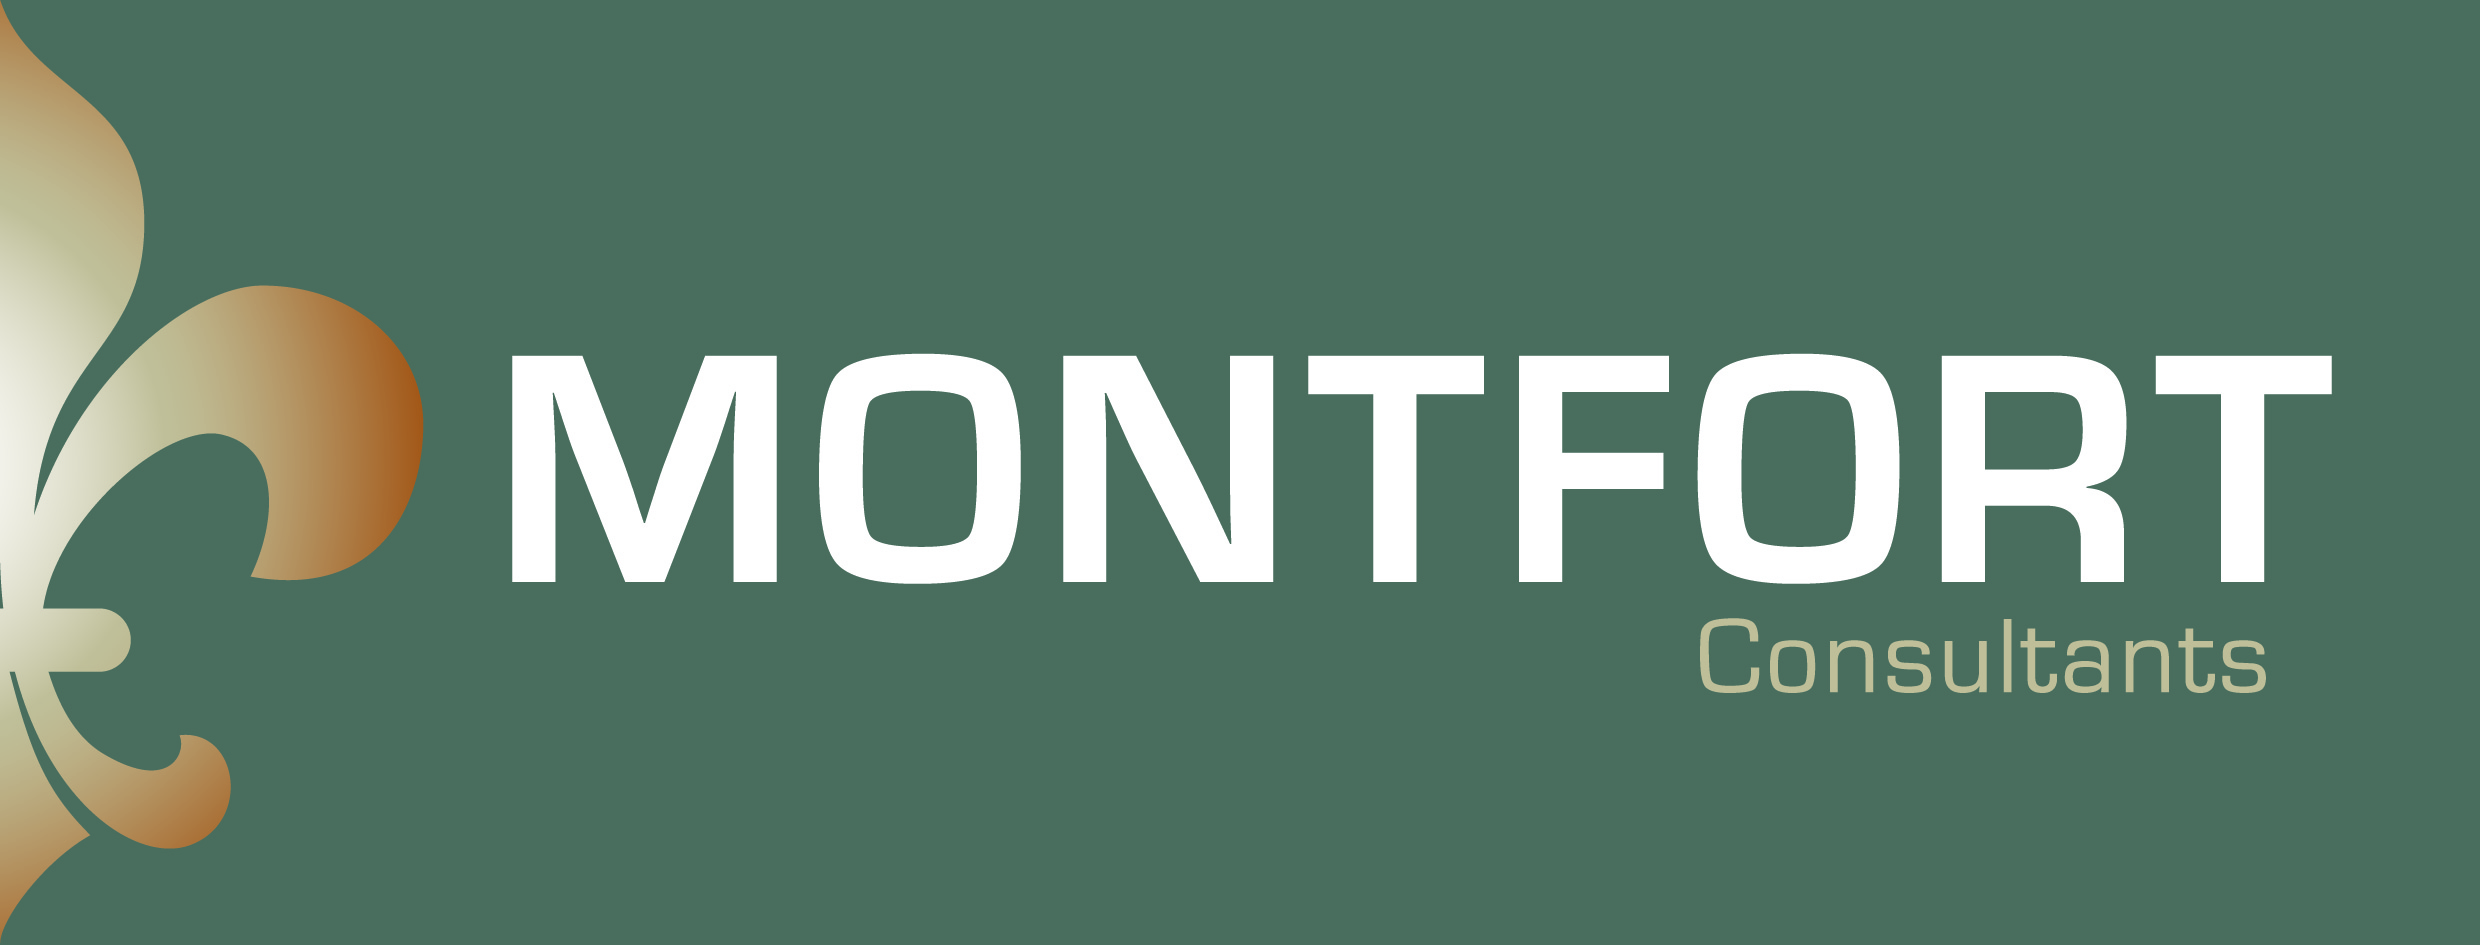 Montfort Catering Consultants